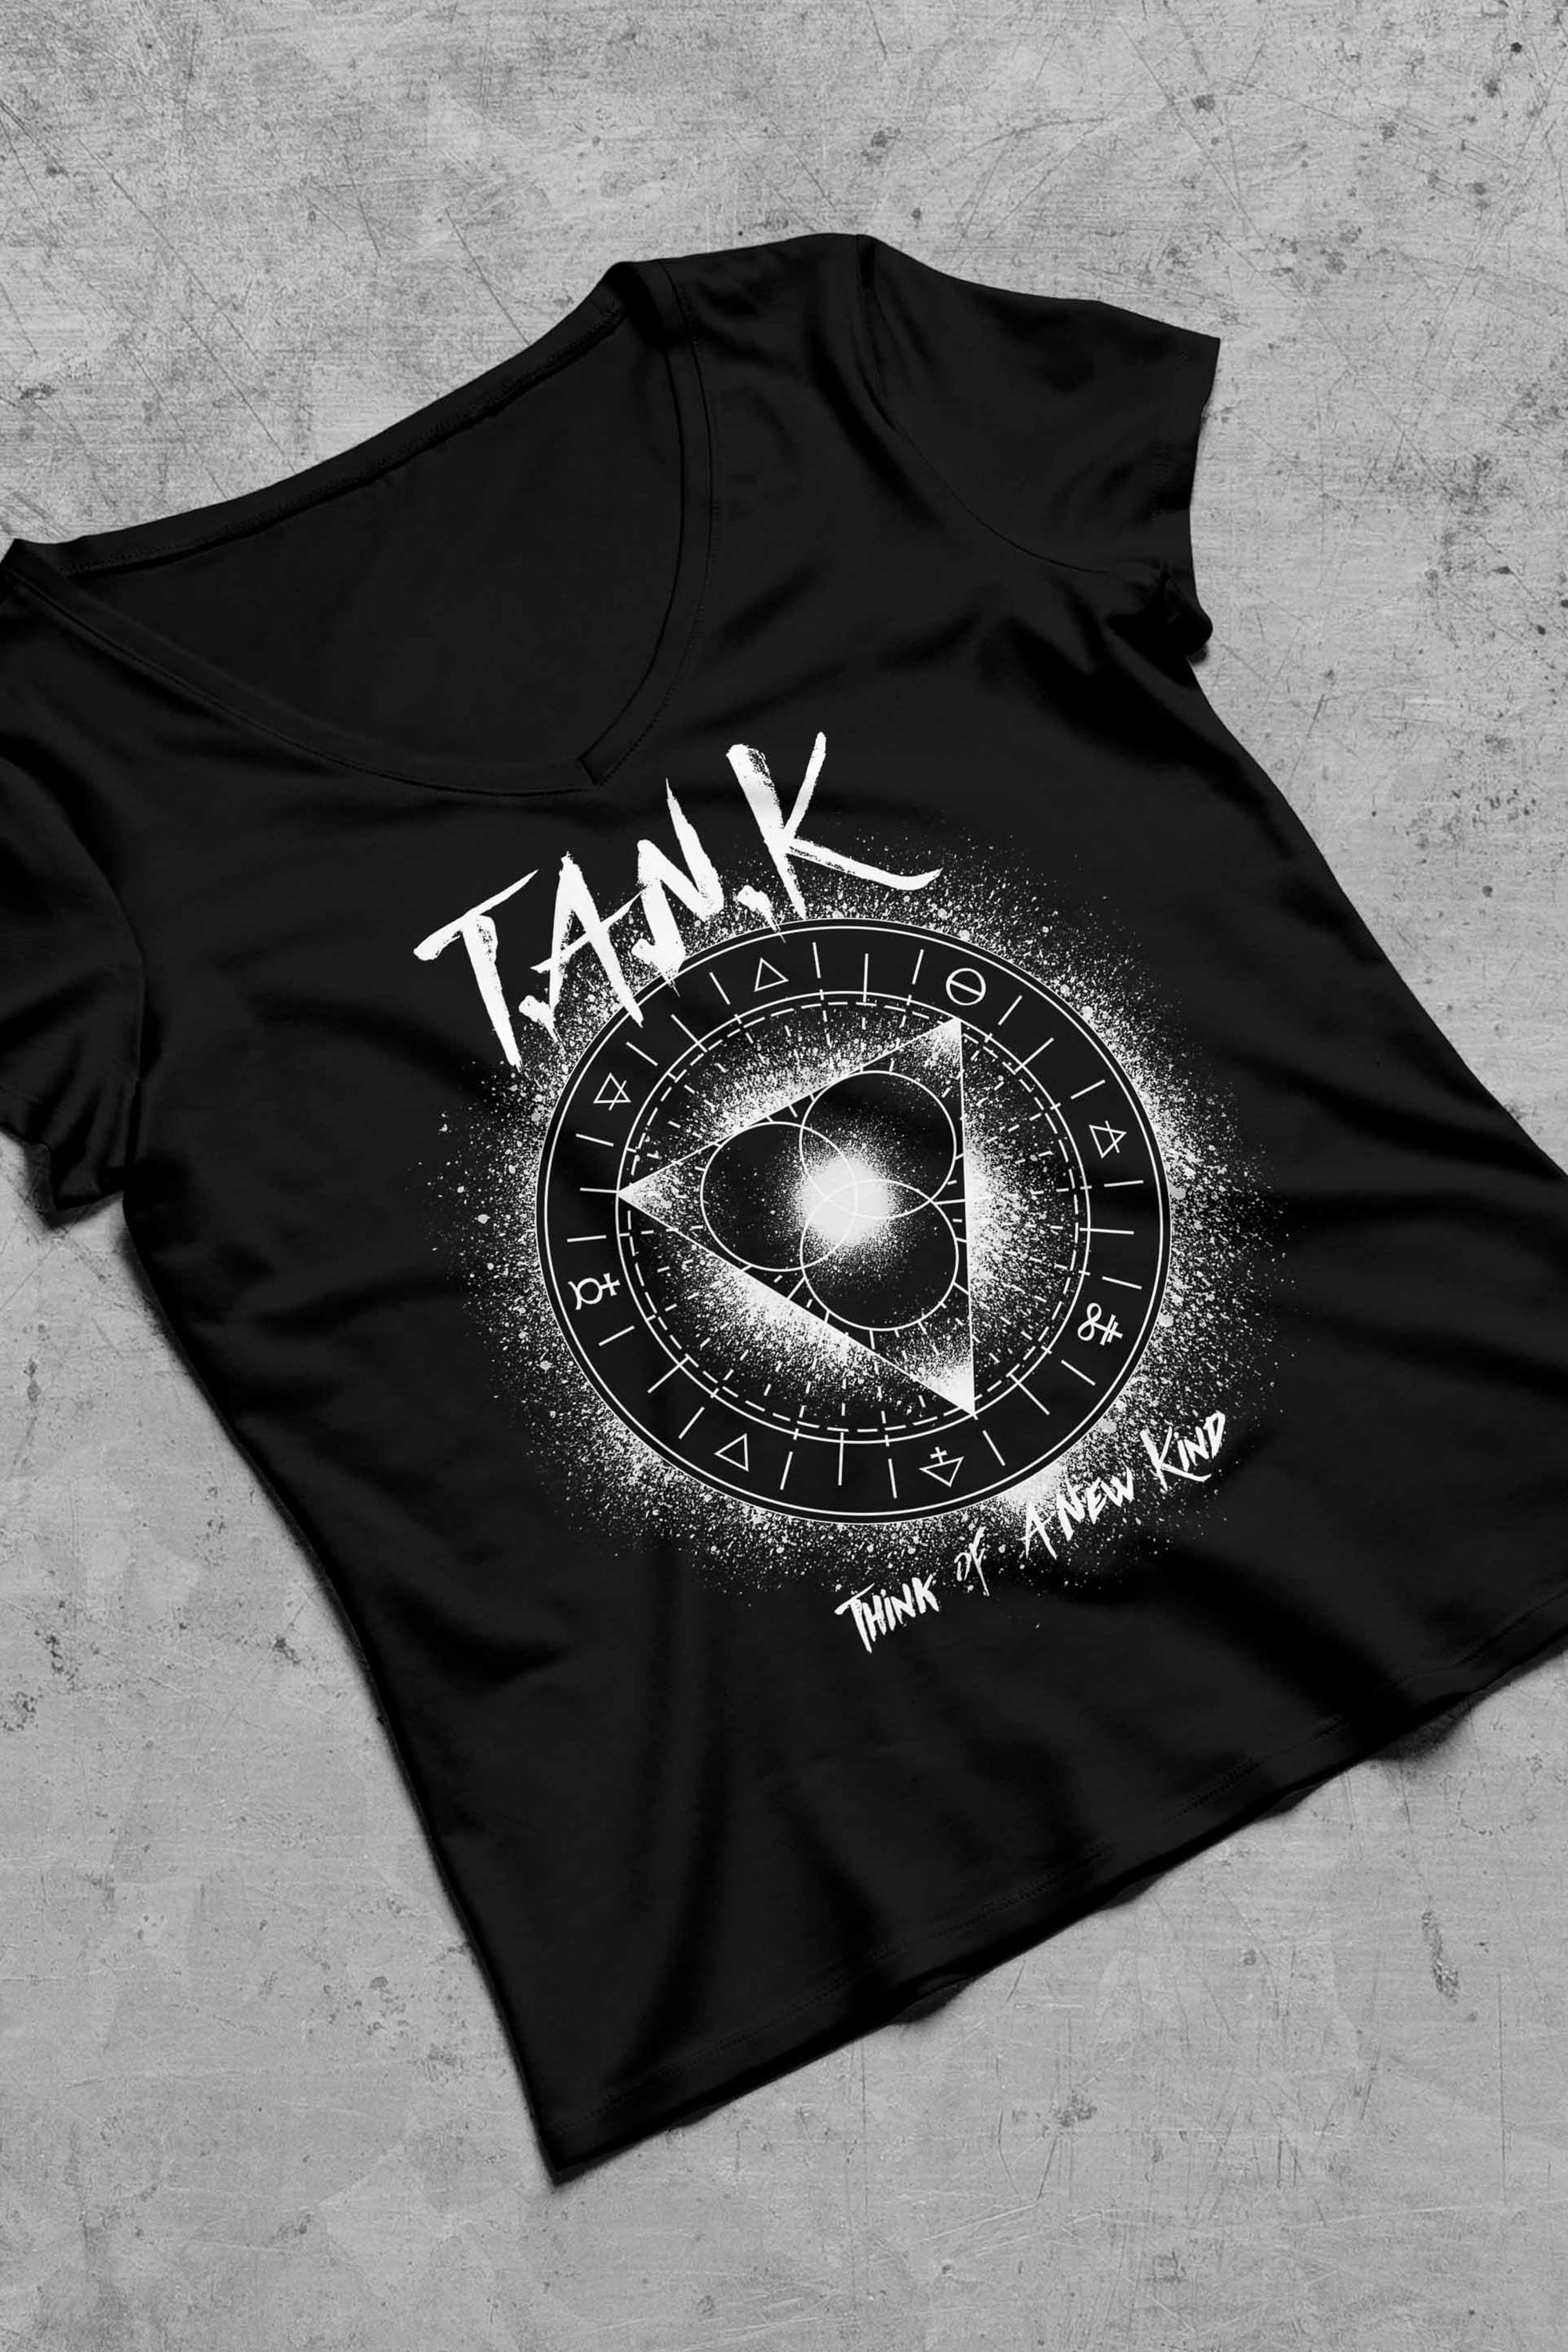 T-shirt fille T.A.N.K métal